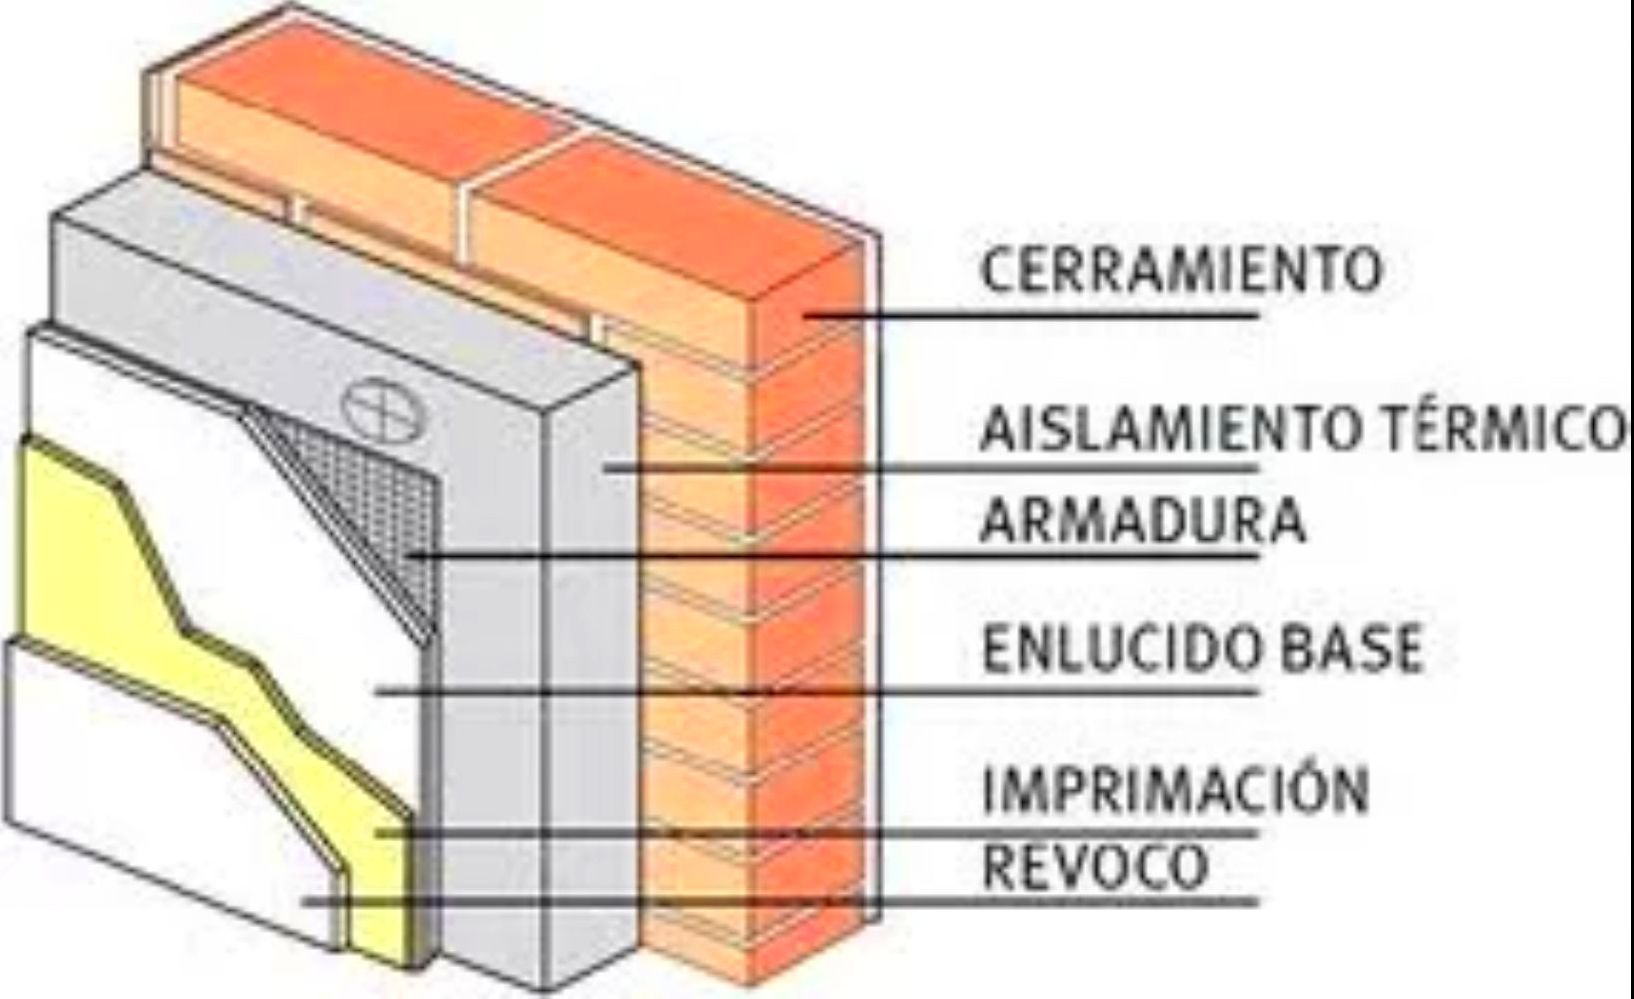 Aislamiento termico fachadas exterior isover